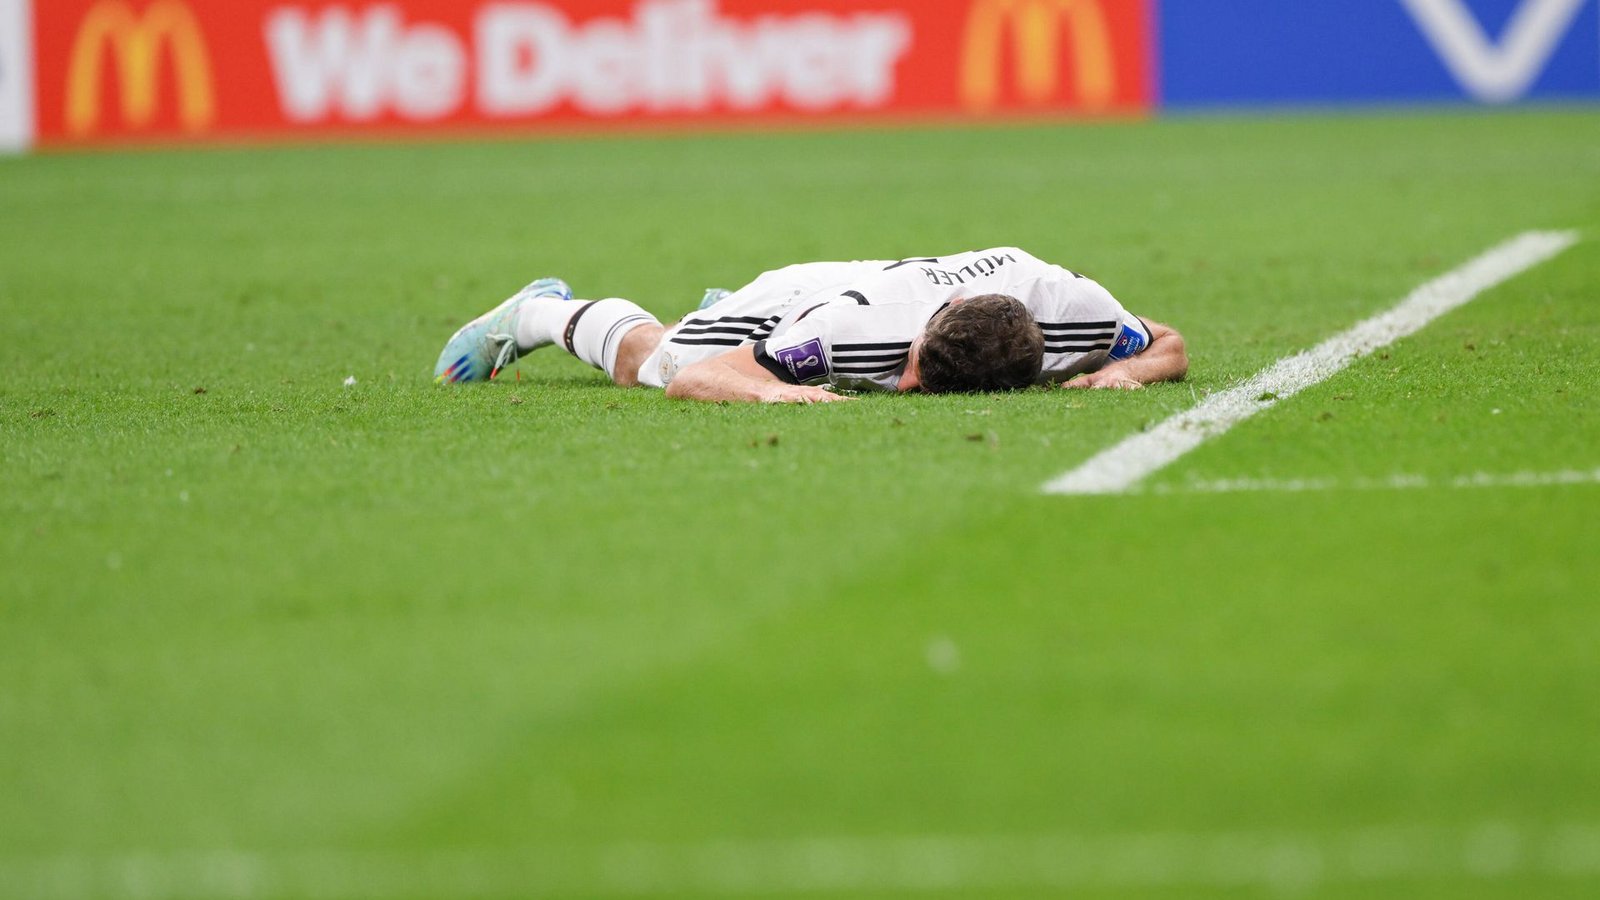 Müller enttäuschte im Spiel gegen Costa Rica.Foto: IMAGO/Ulmer/Teamfoto/Michael Kienzler